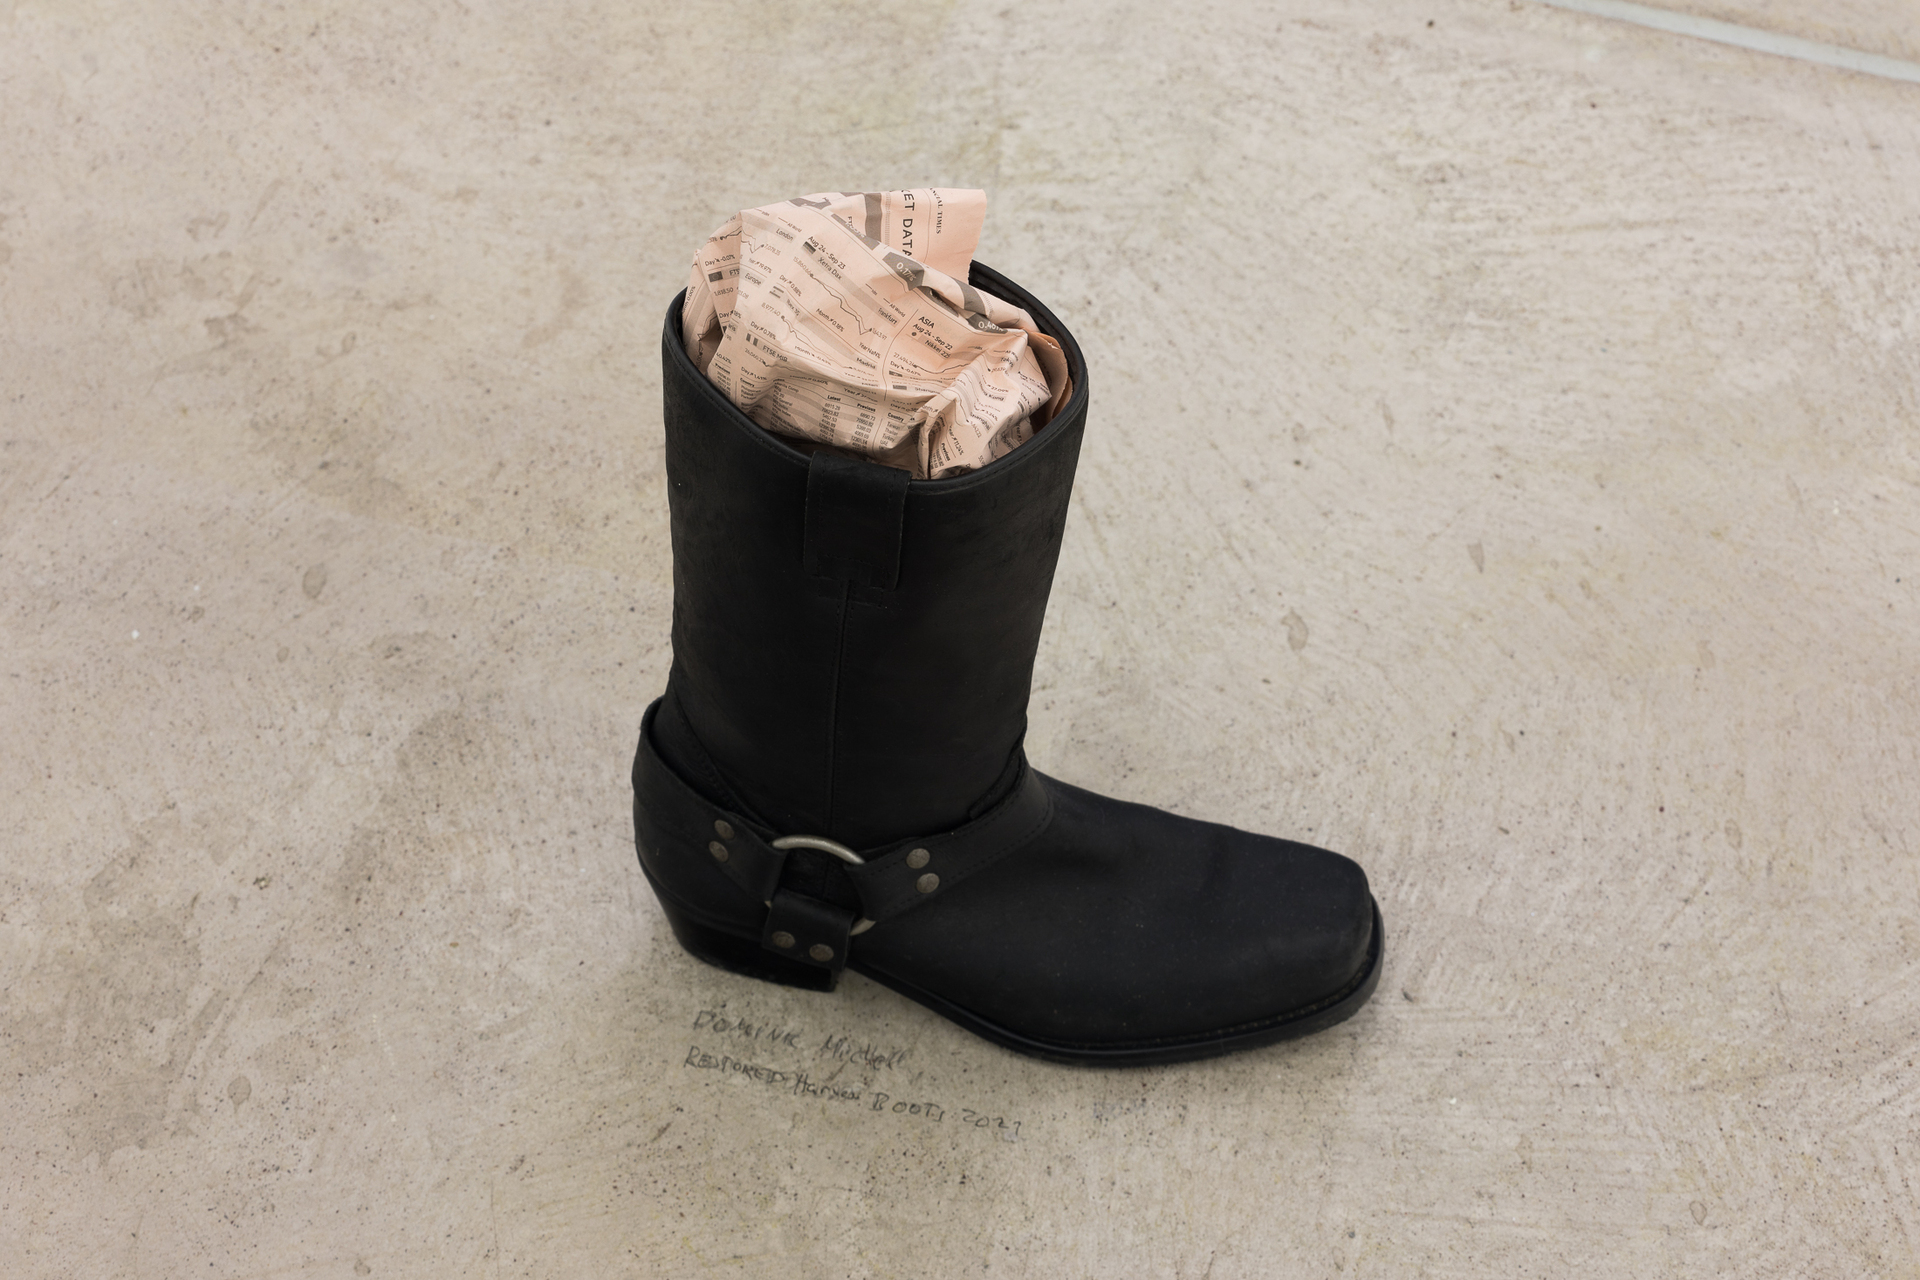 Dominic Michel, Restored Harness Boot, 2020